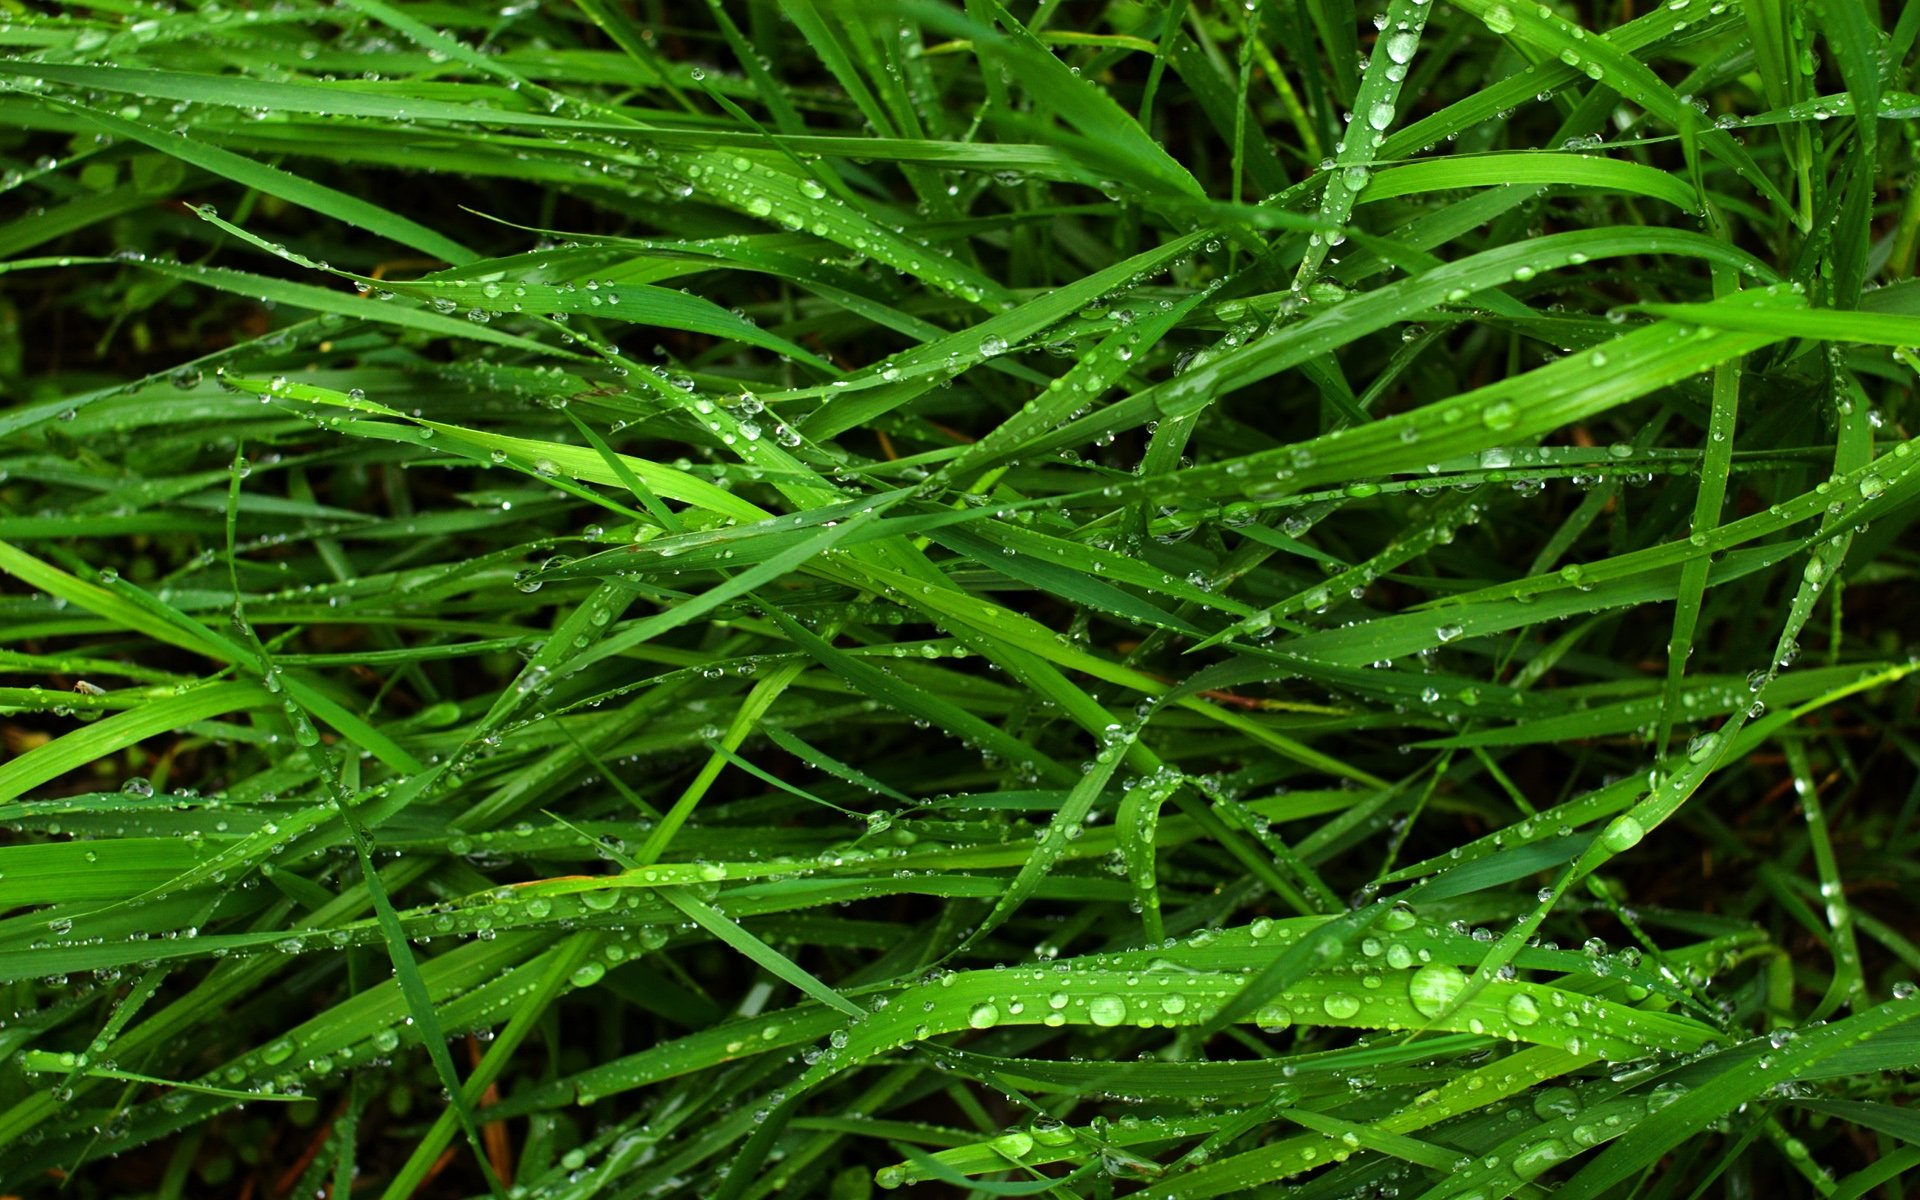 grass Wallpaper